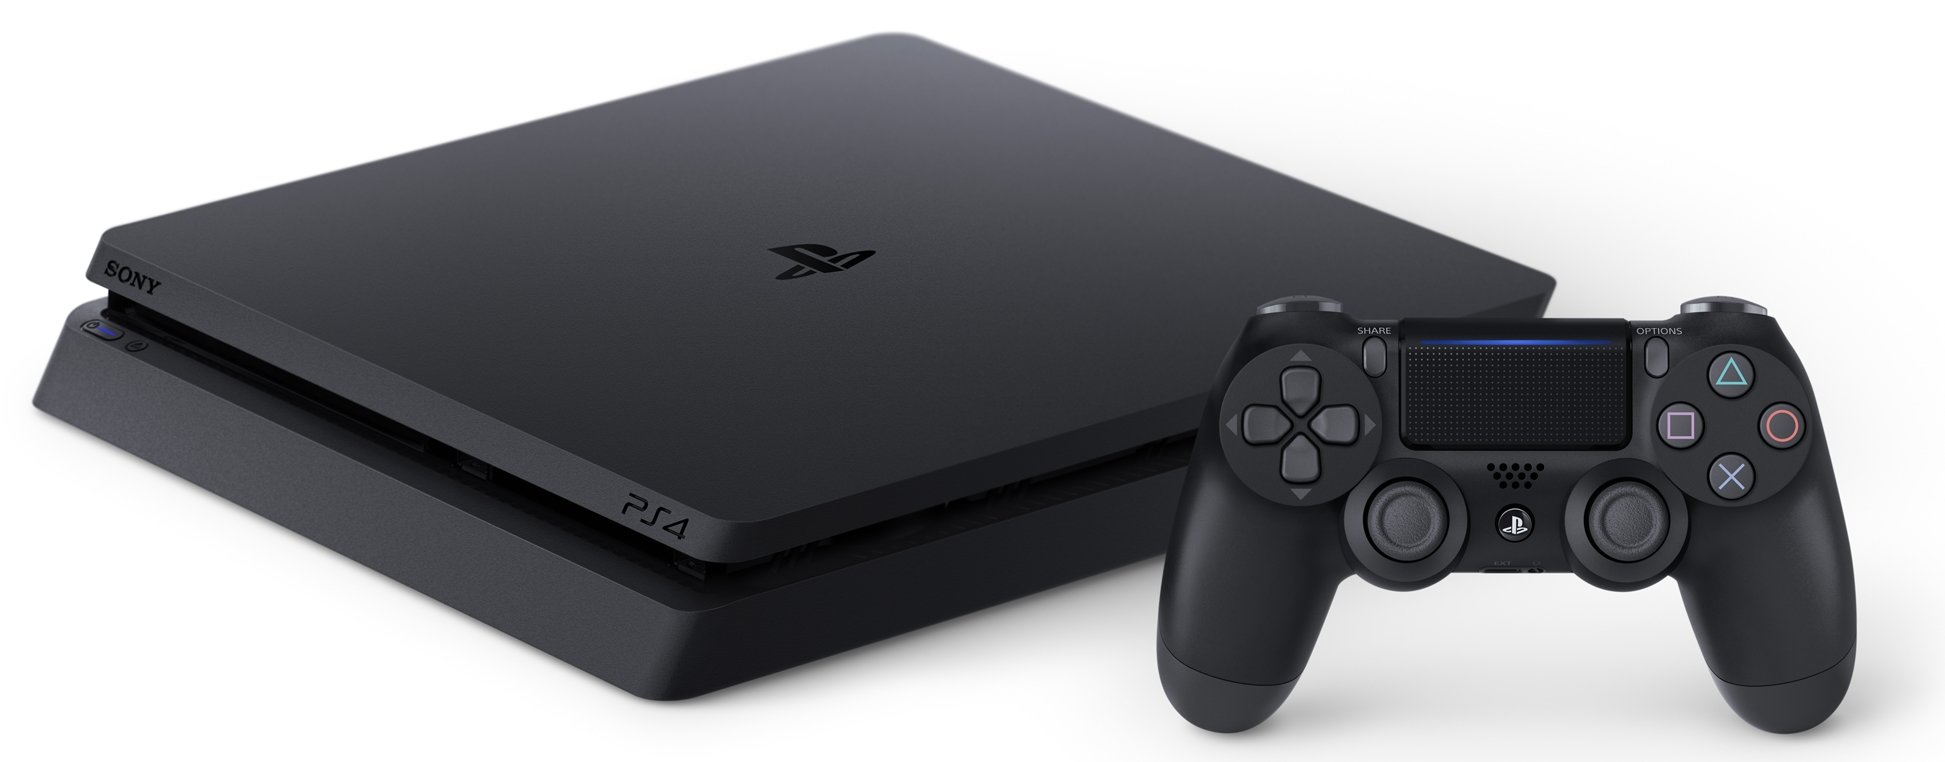 SONY PlayStation 4 Slim 500GB Konsola - niskie ceny i opinie w Media Expert